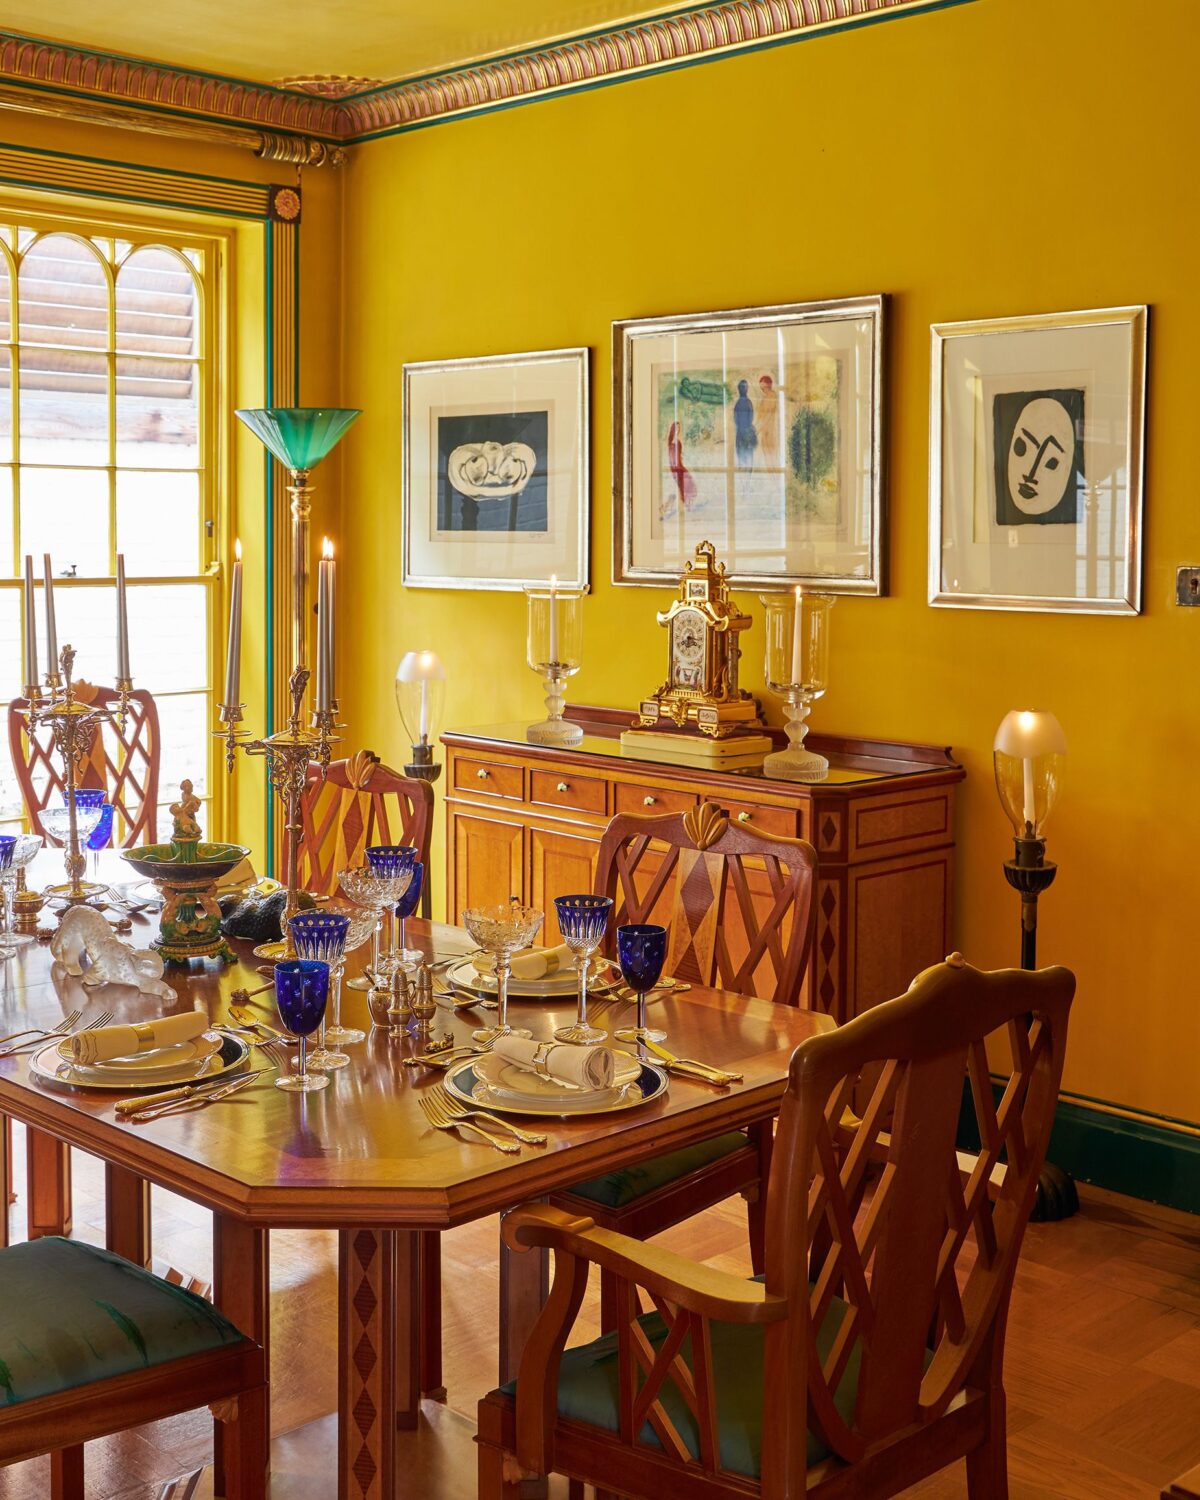 La sala da pranzo della casa, dipinta nel colore preferito di Freddy Mercury